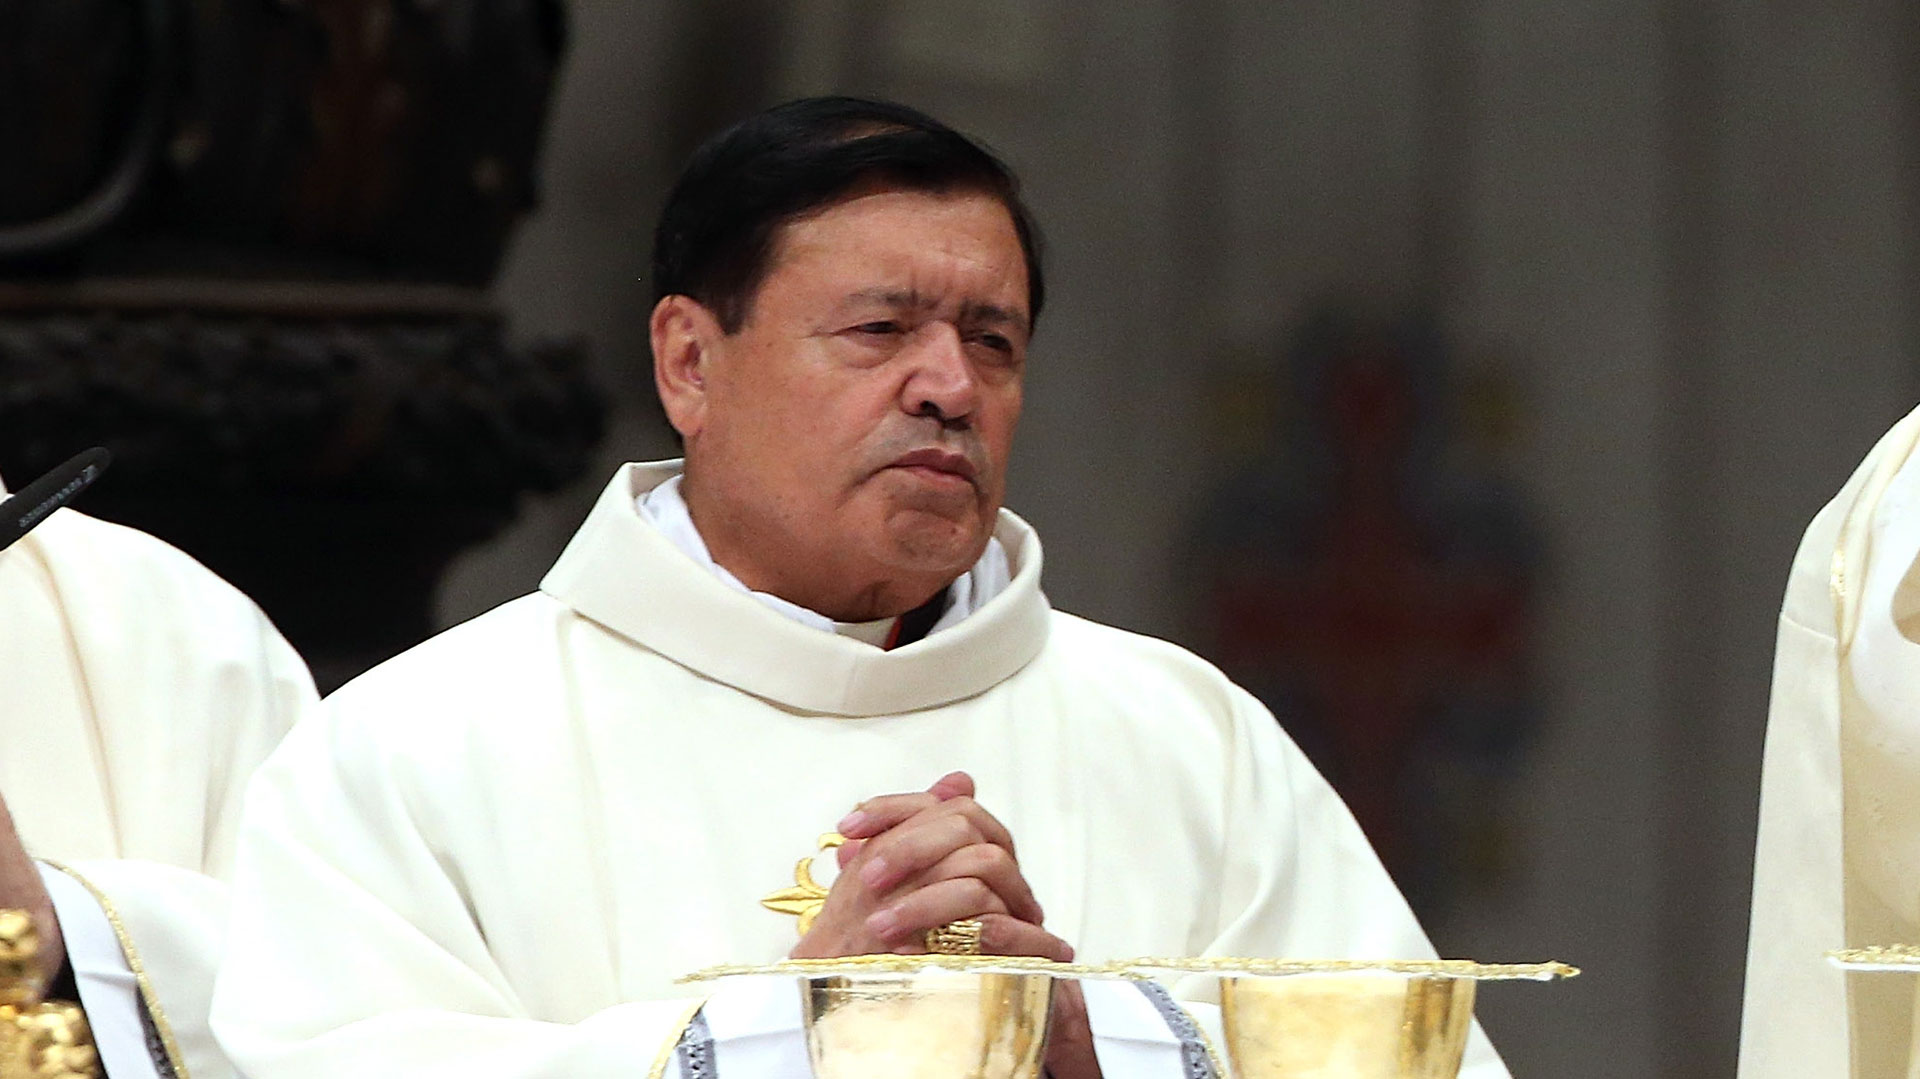 Los rumores que reportaban la muerte del arzobispo emérito, Norberto Rivera, son infundados